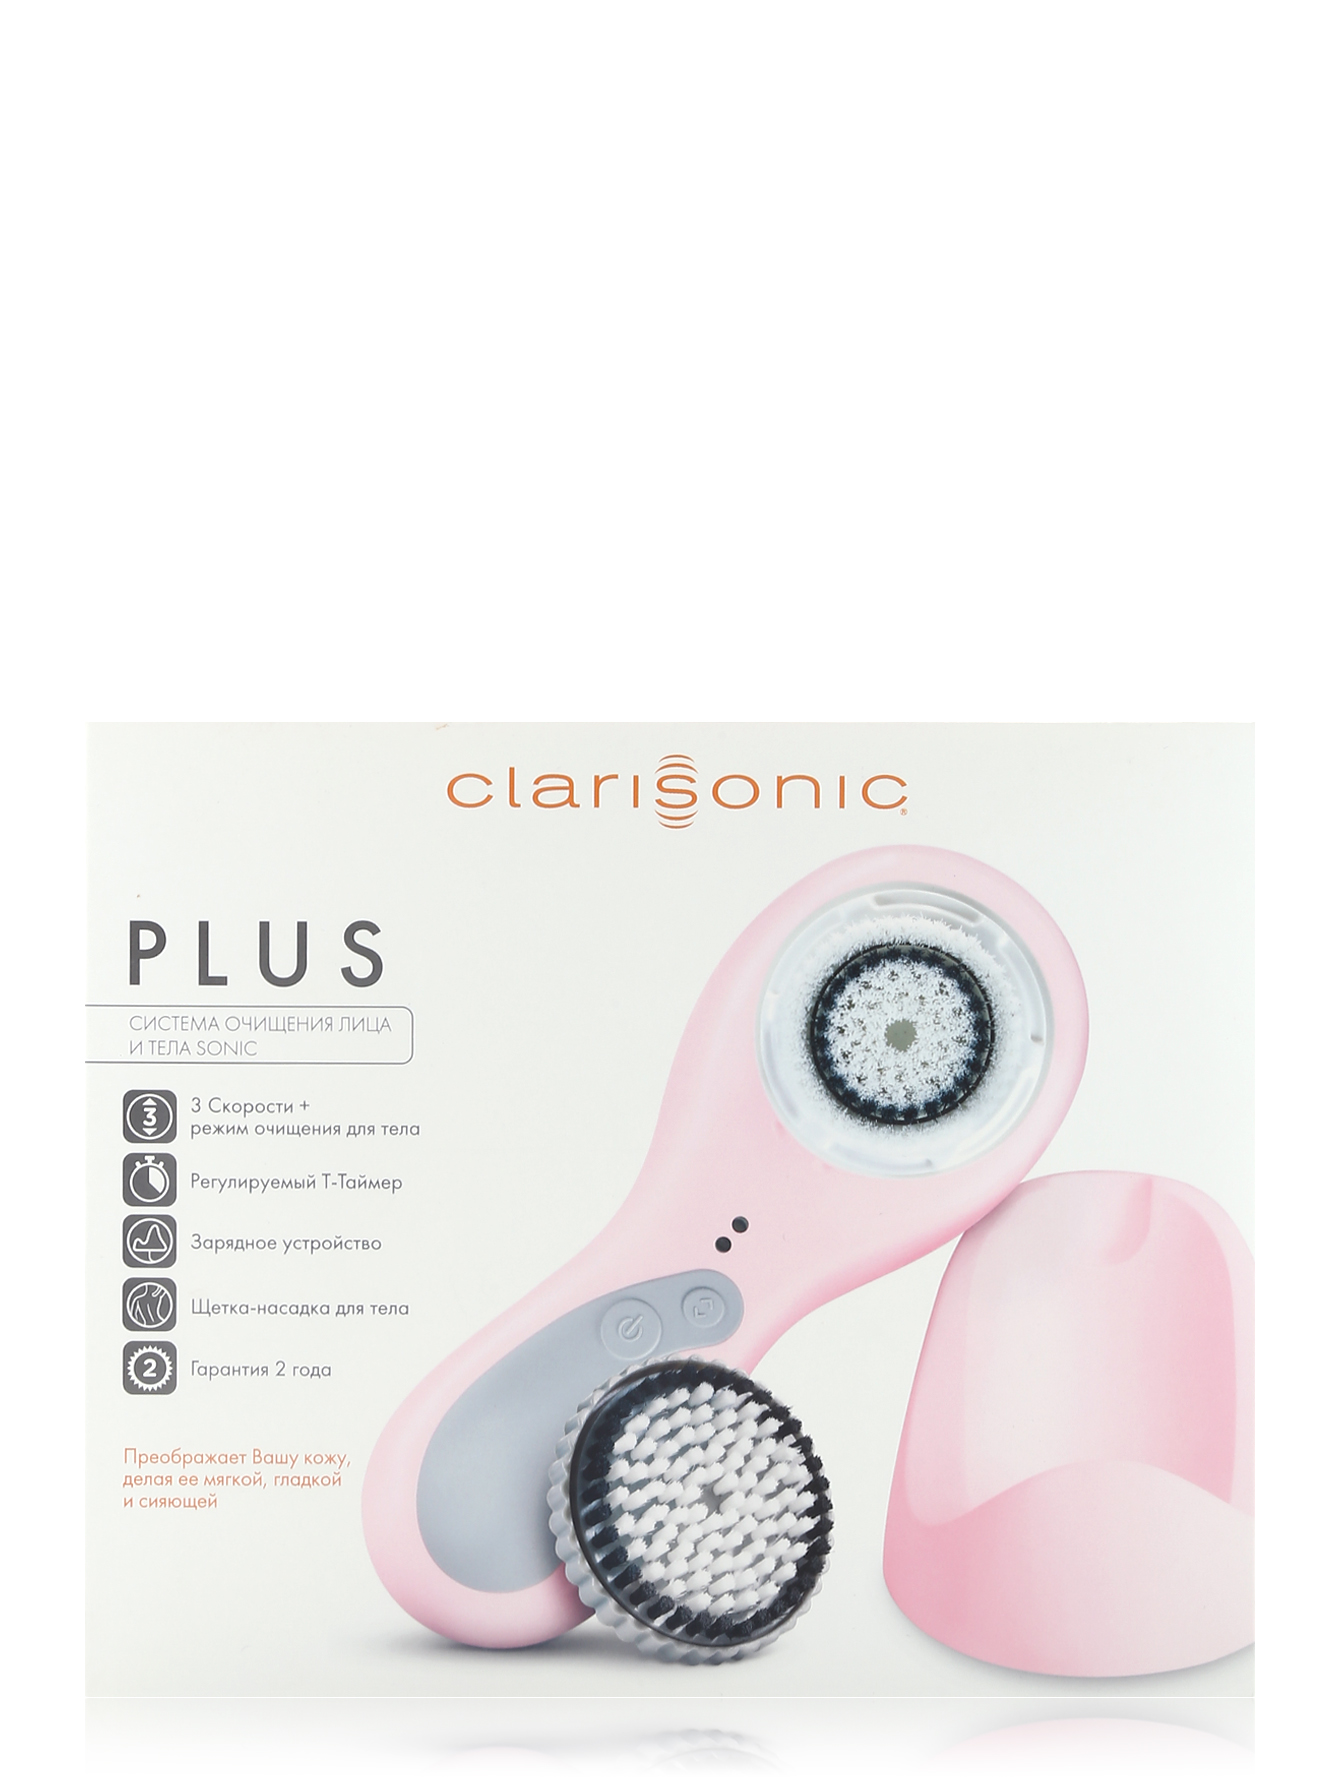  Устройство по уходу за кожей лица - Clarisonic Plus - Общий вид